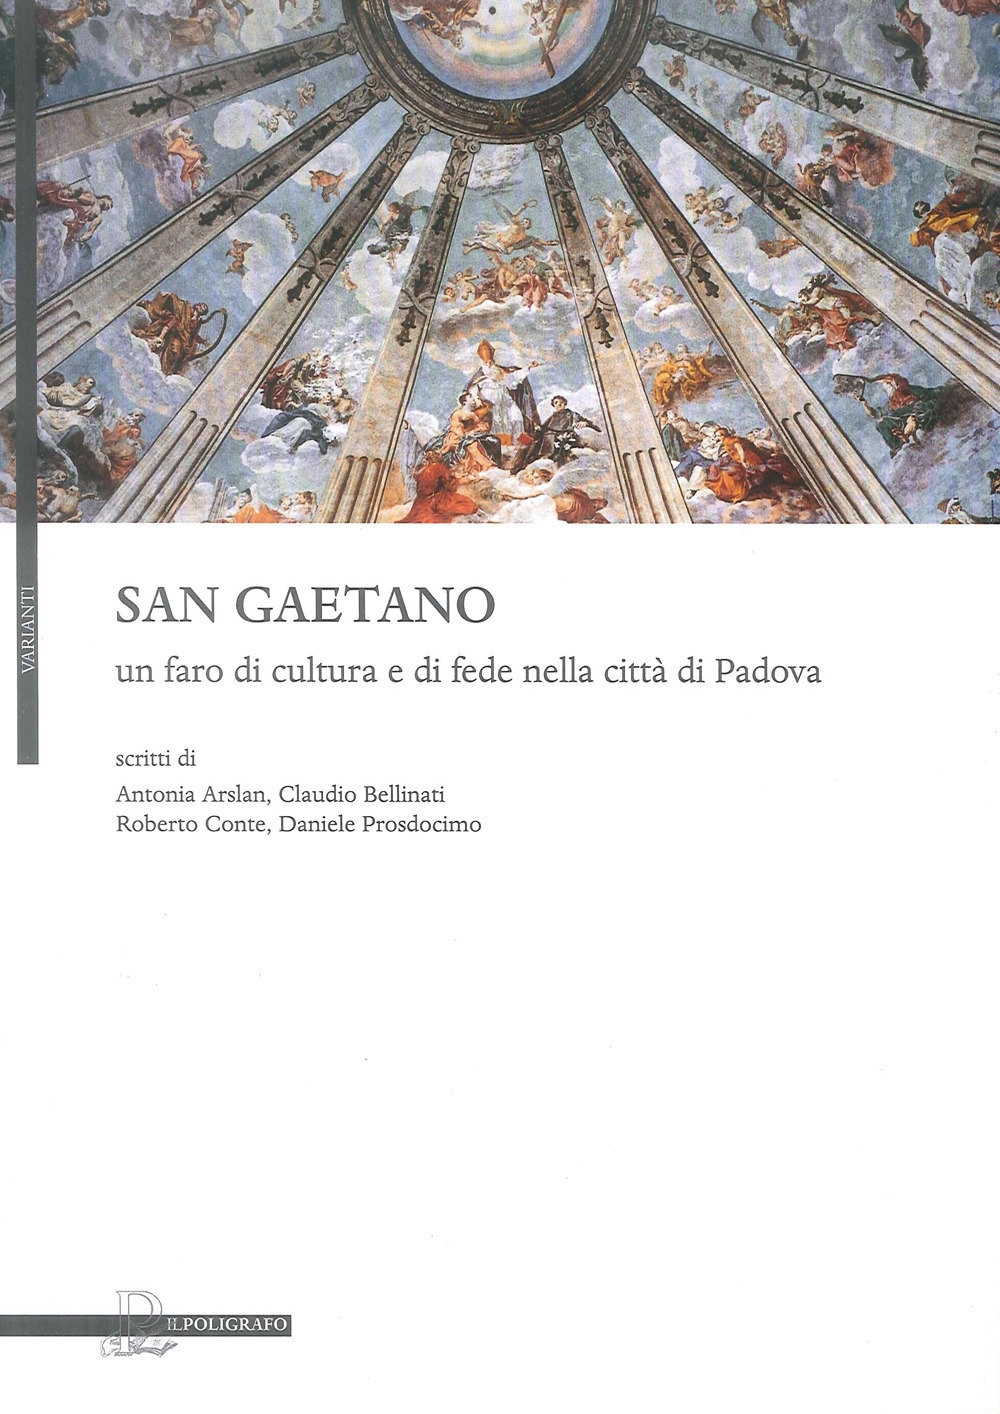 San Gaetano, un faro di cultura e di fede nella città di Padova.